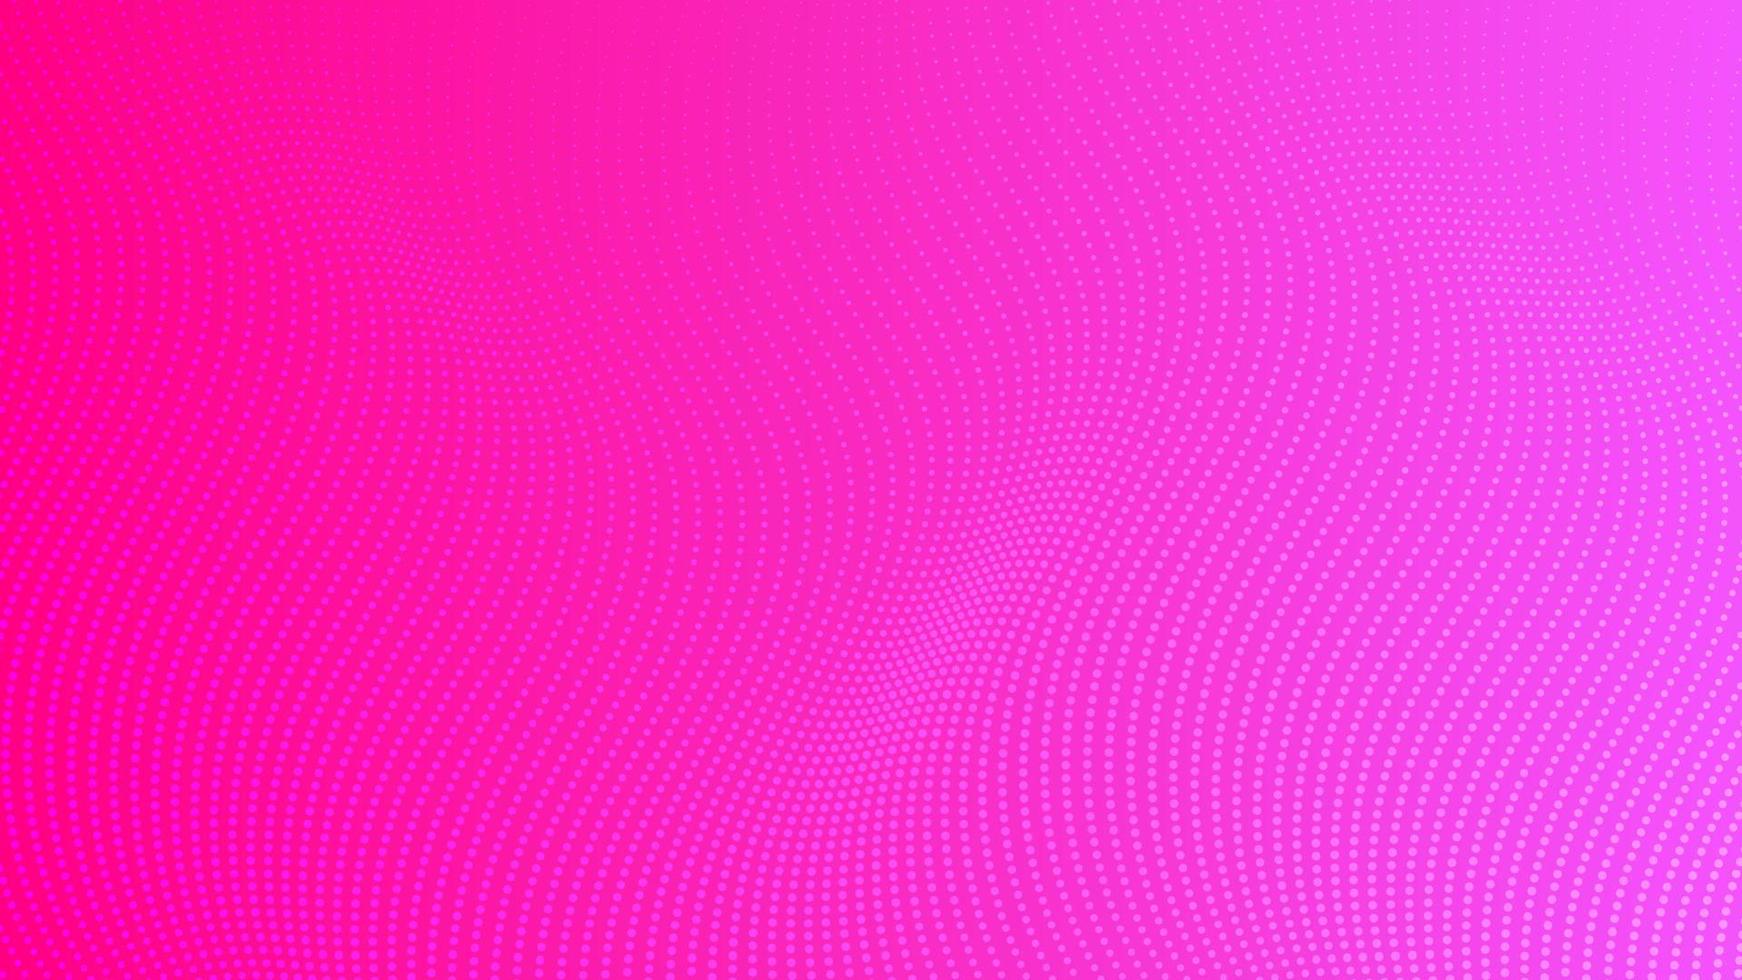 halftone helling achtergrond met stippen. abstract roze stippel knal kunst patroon in grappig stijl. vector illustratie